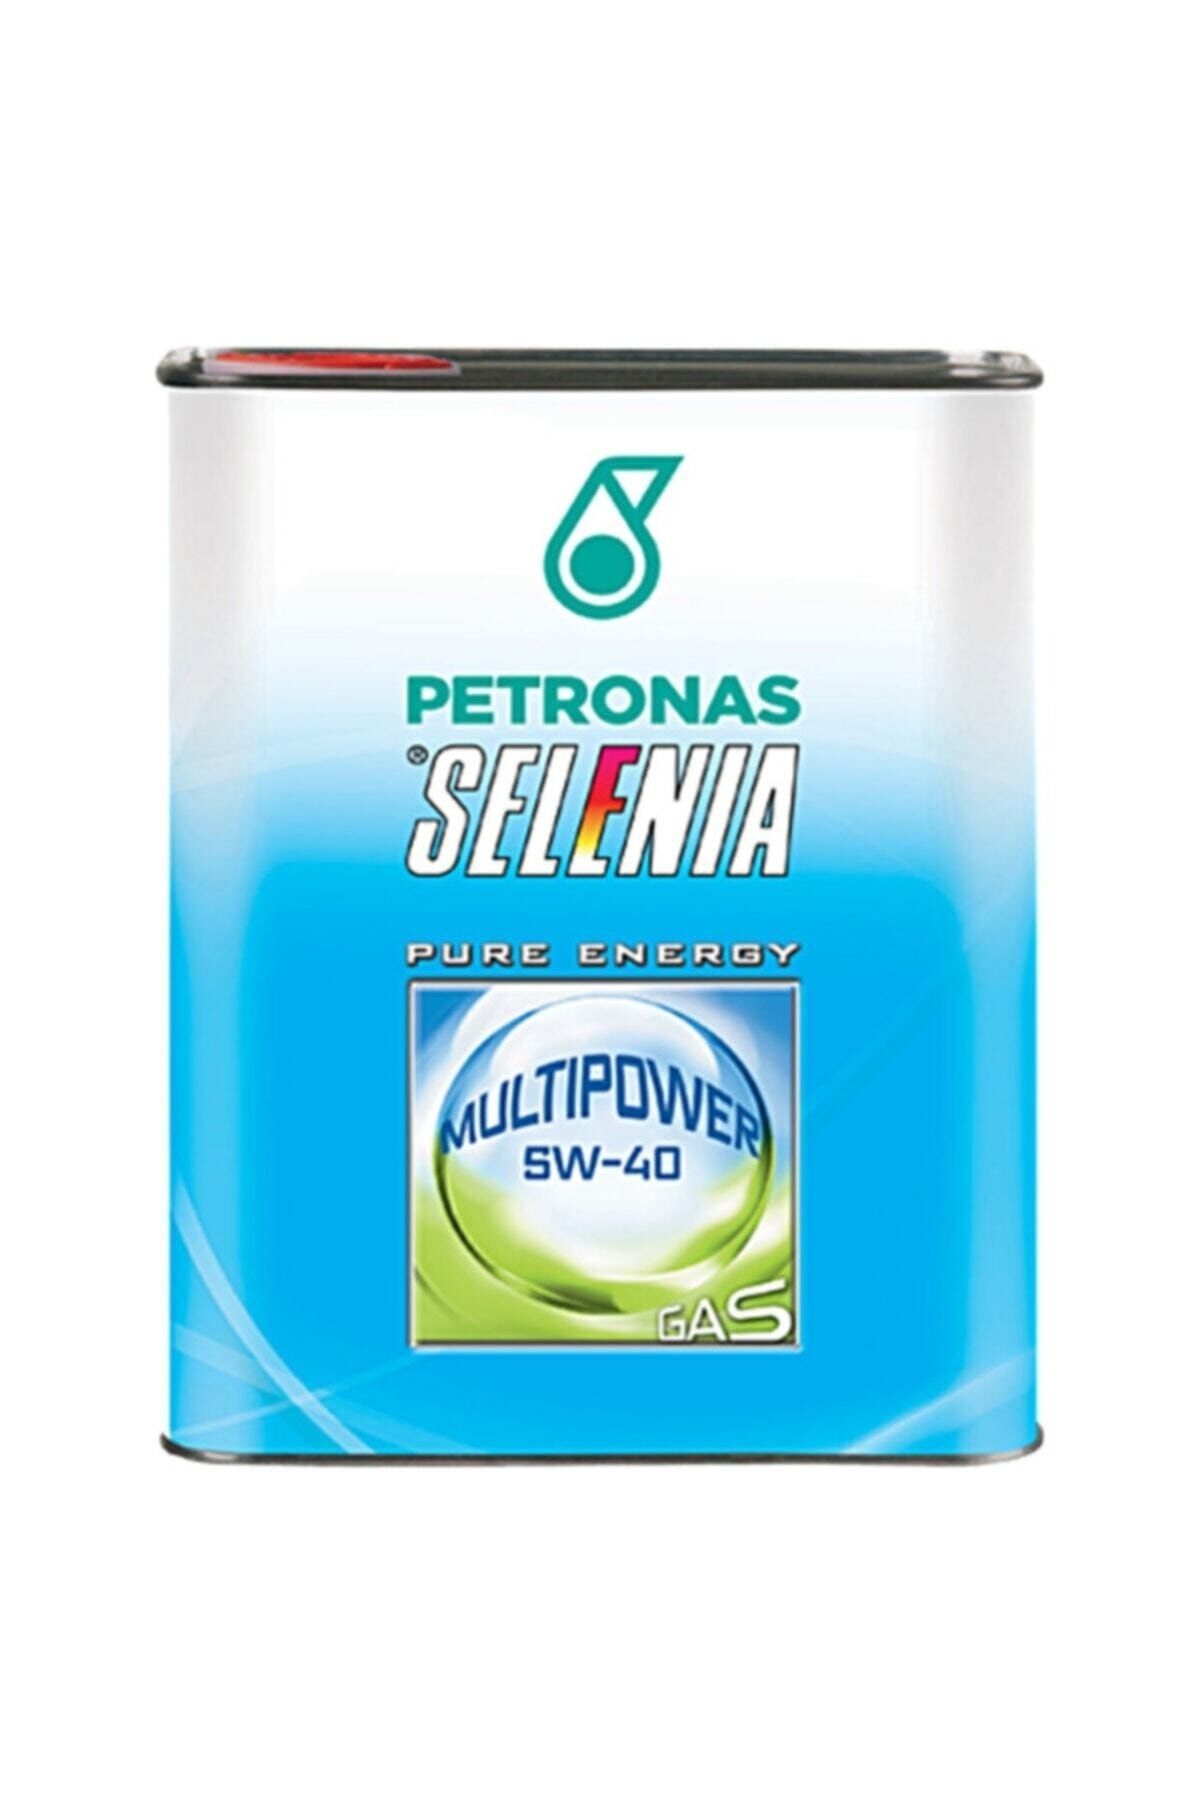 Petronas Selenia Multipower Gas 5w-40 3 Litre Motor Yağı